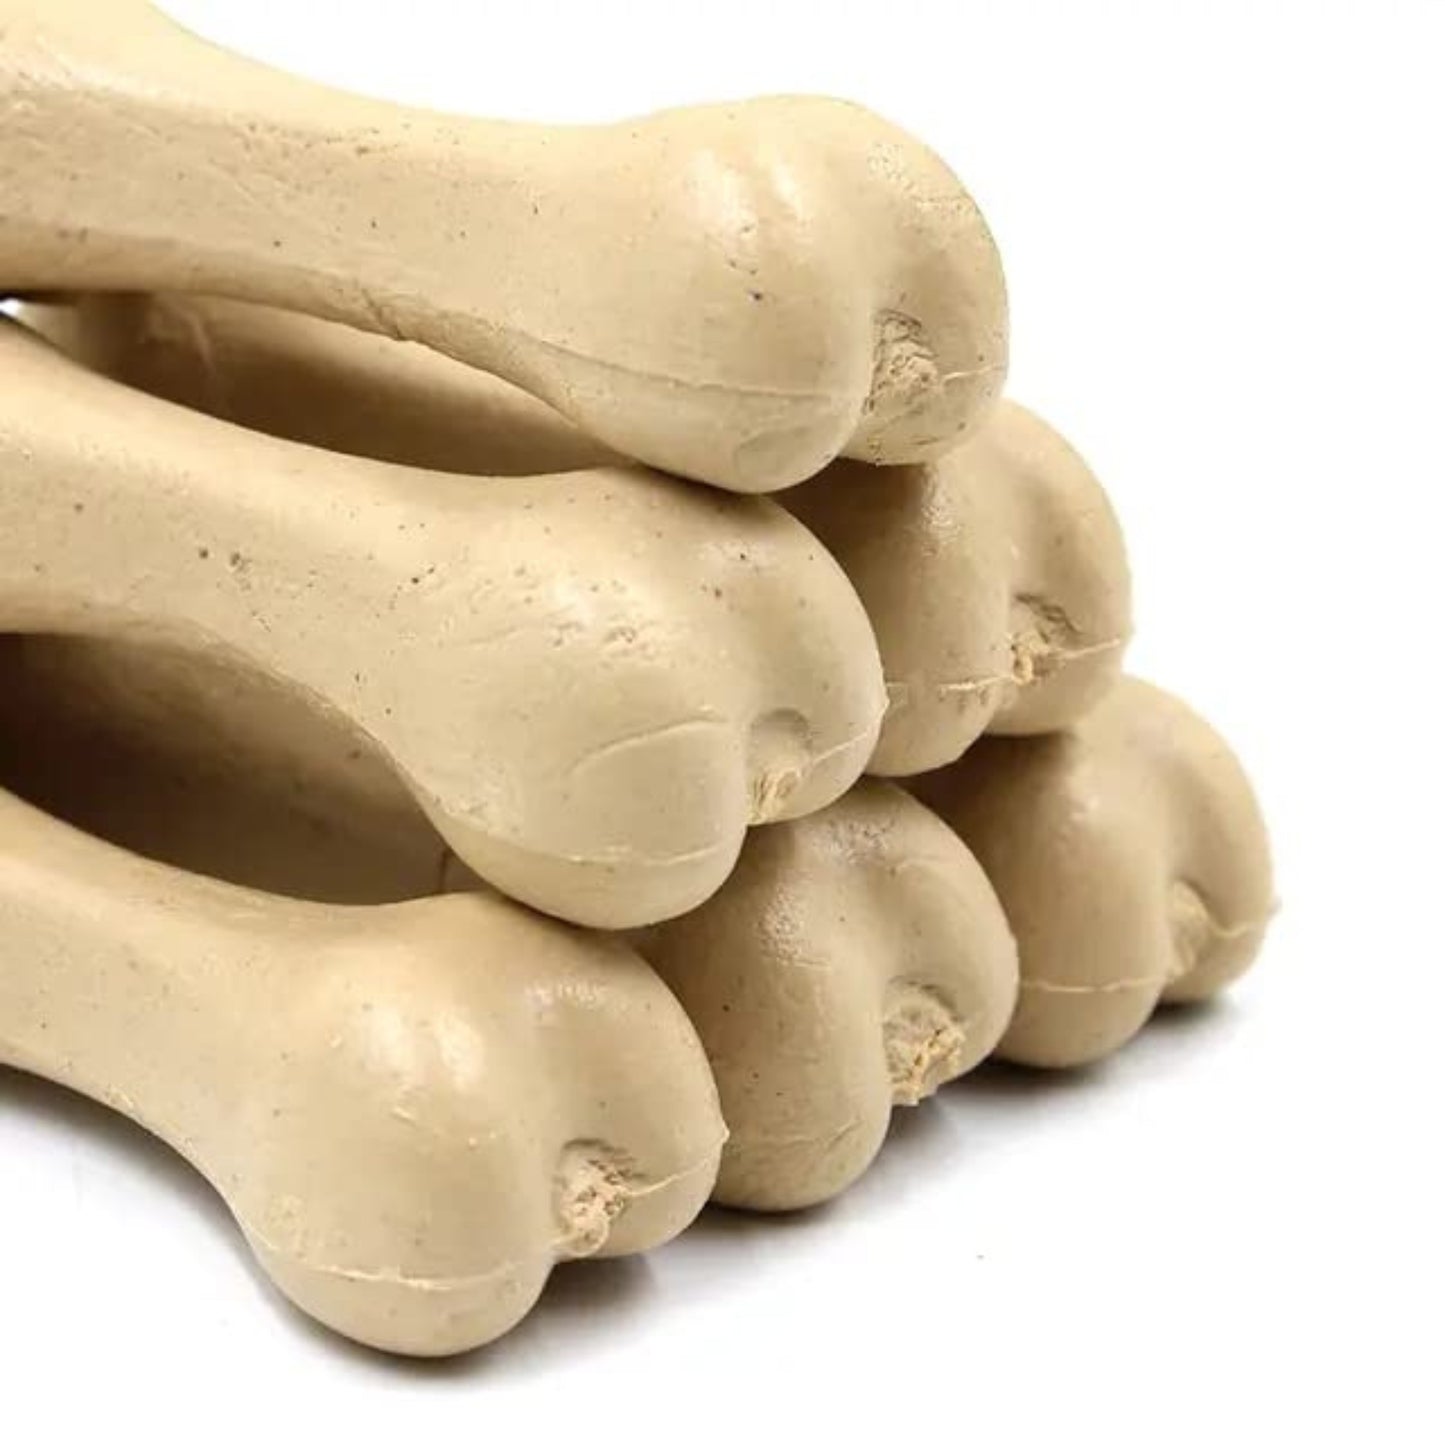 Gnawlers Calcium Milk Bones Dog Treats 12Pcs (Medium), Pack of 3